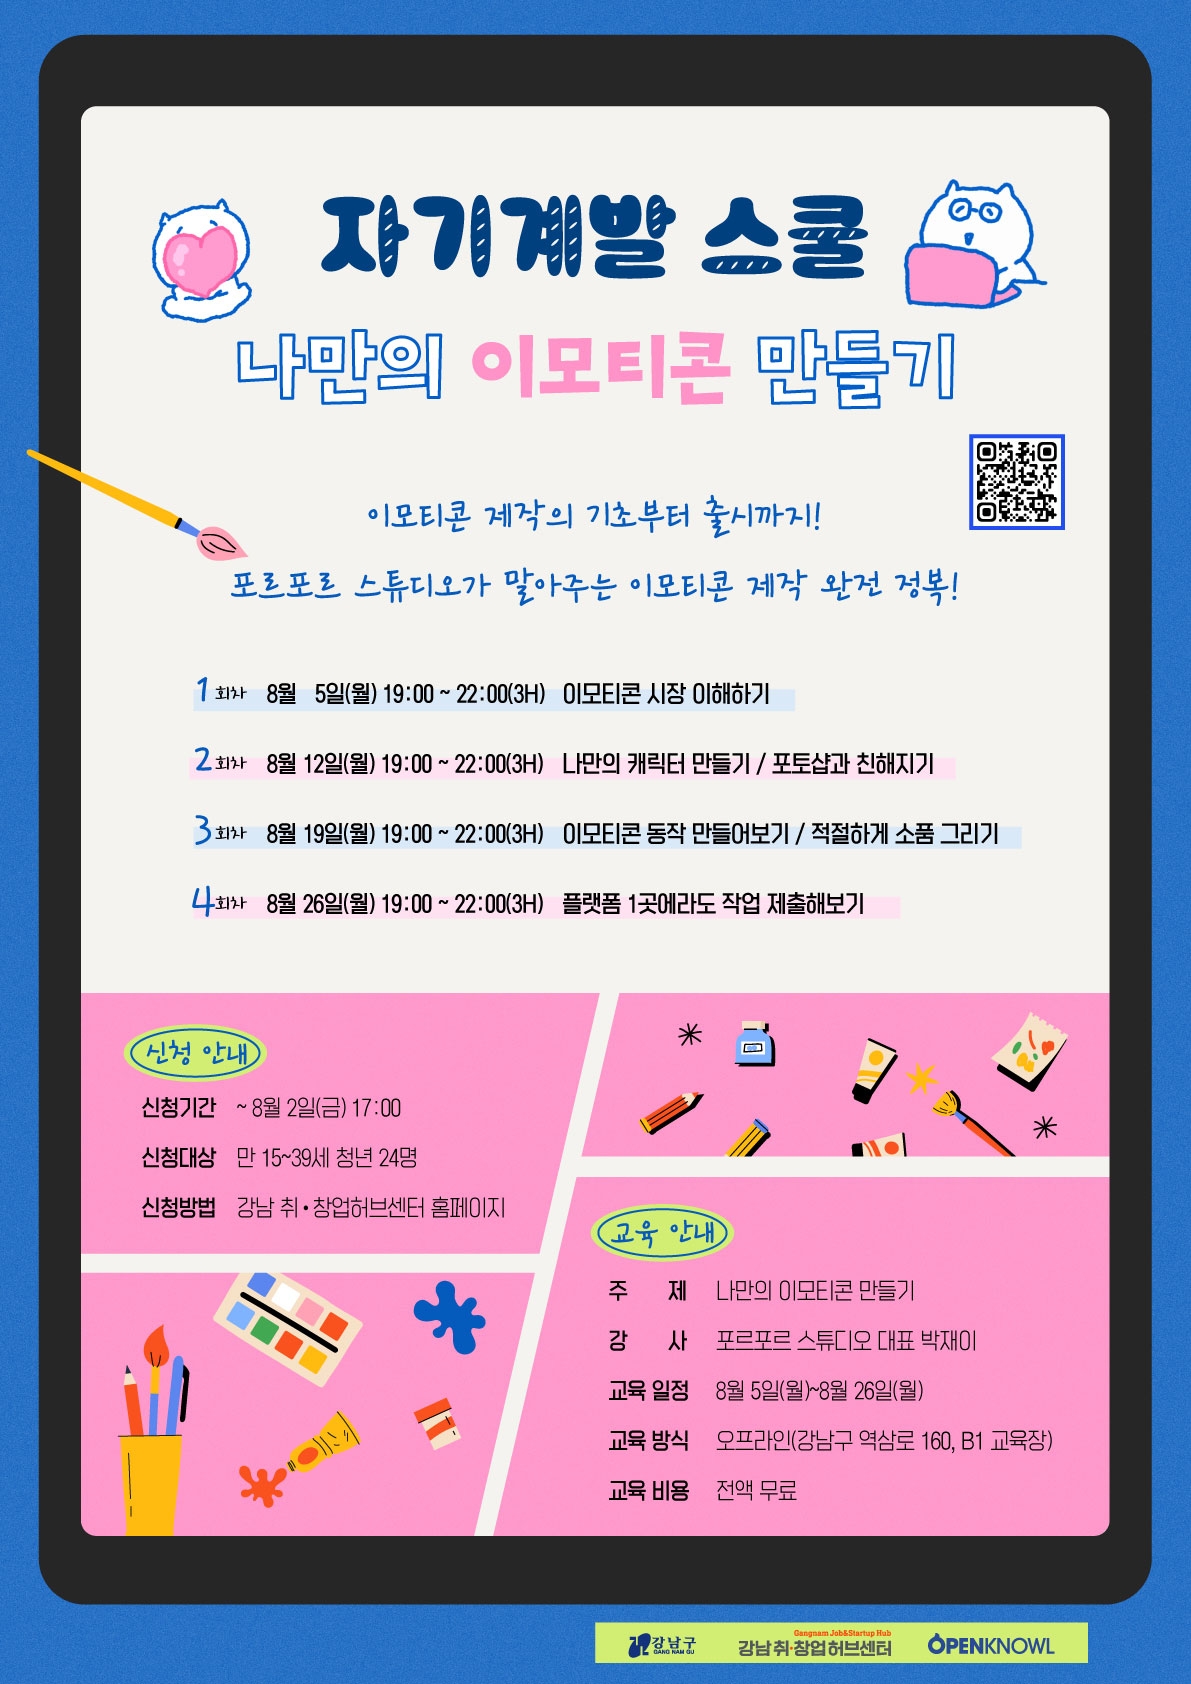 강남 취·창업허브센터 '8월 자기계발스쿨 : 나만의 이모티콘 만들기' 참여자 모집